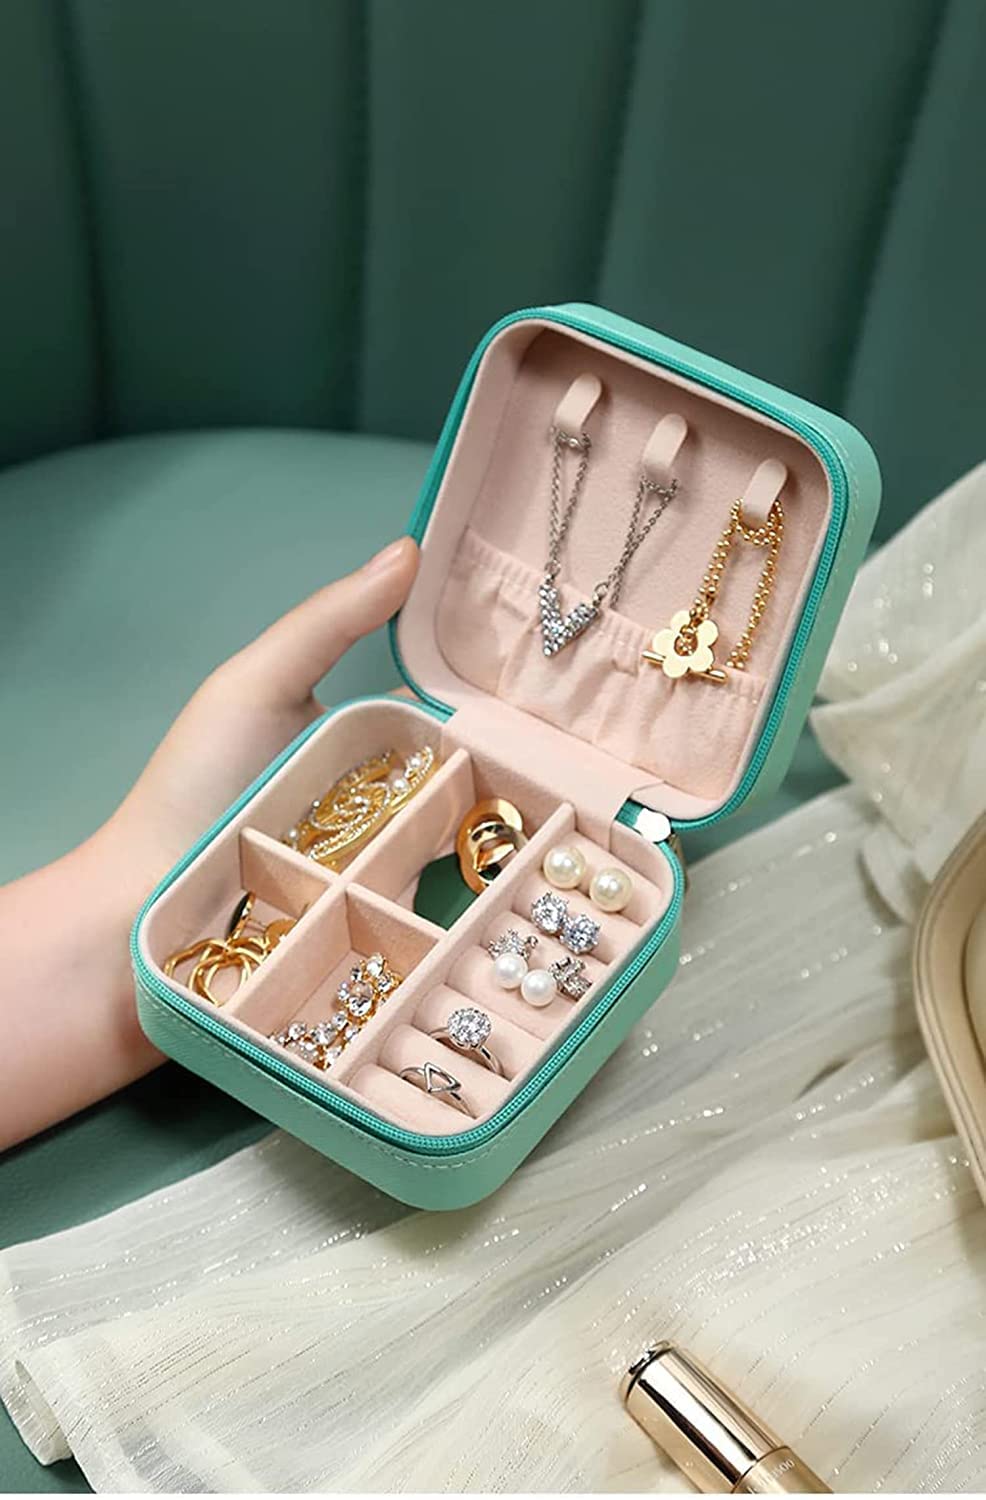 Storage box for jewelry organization